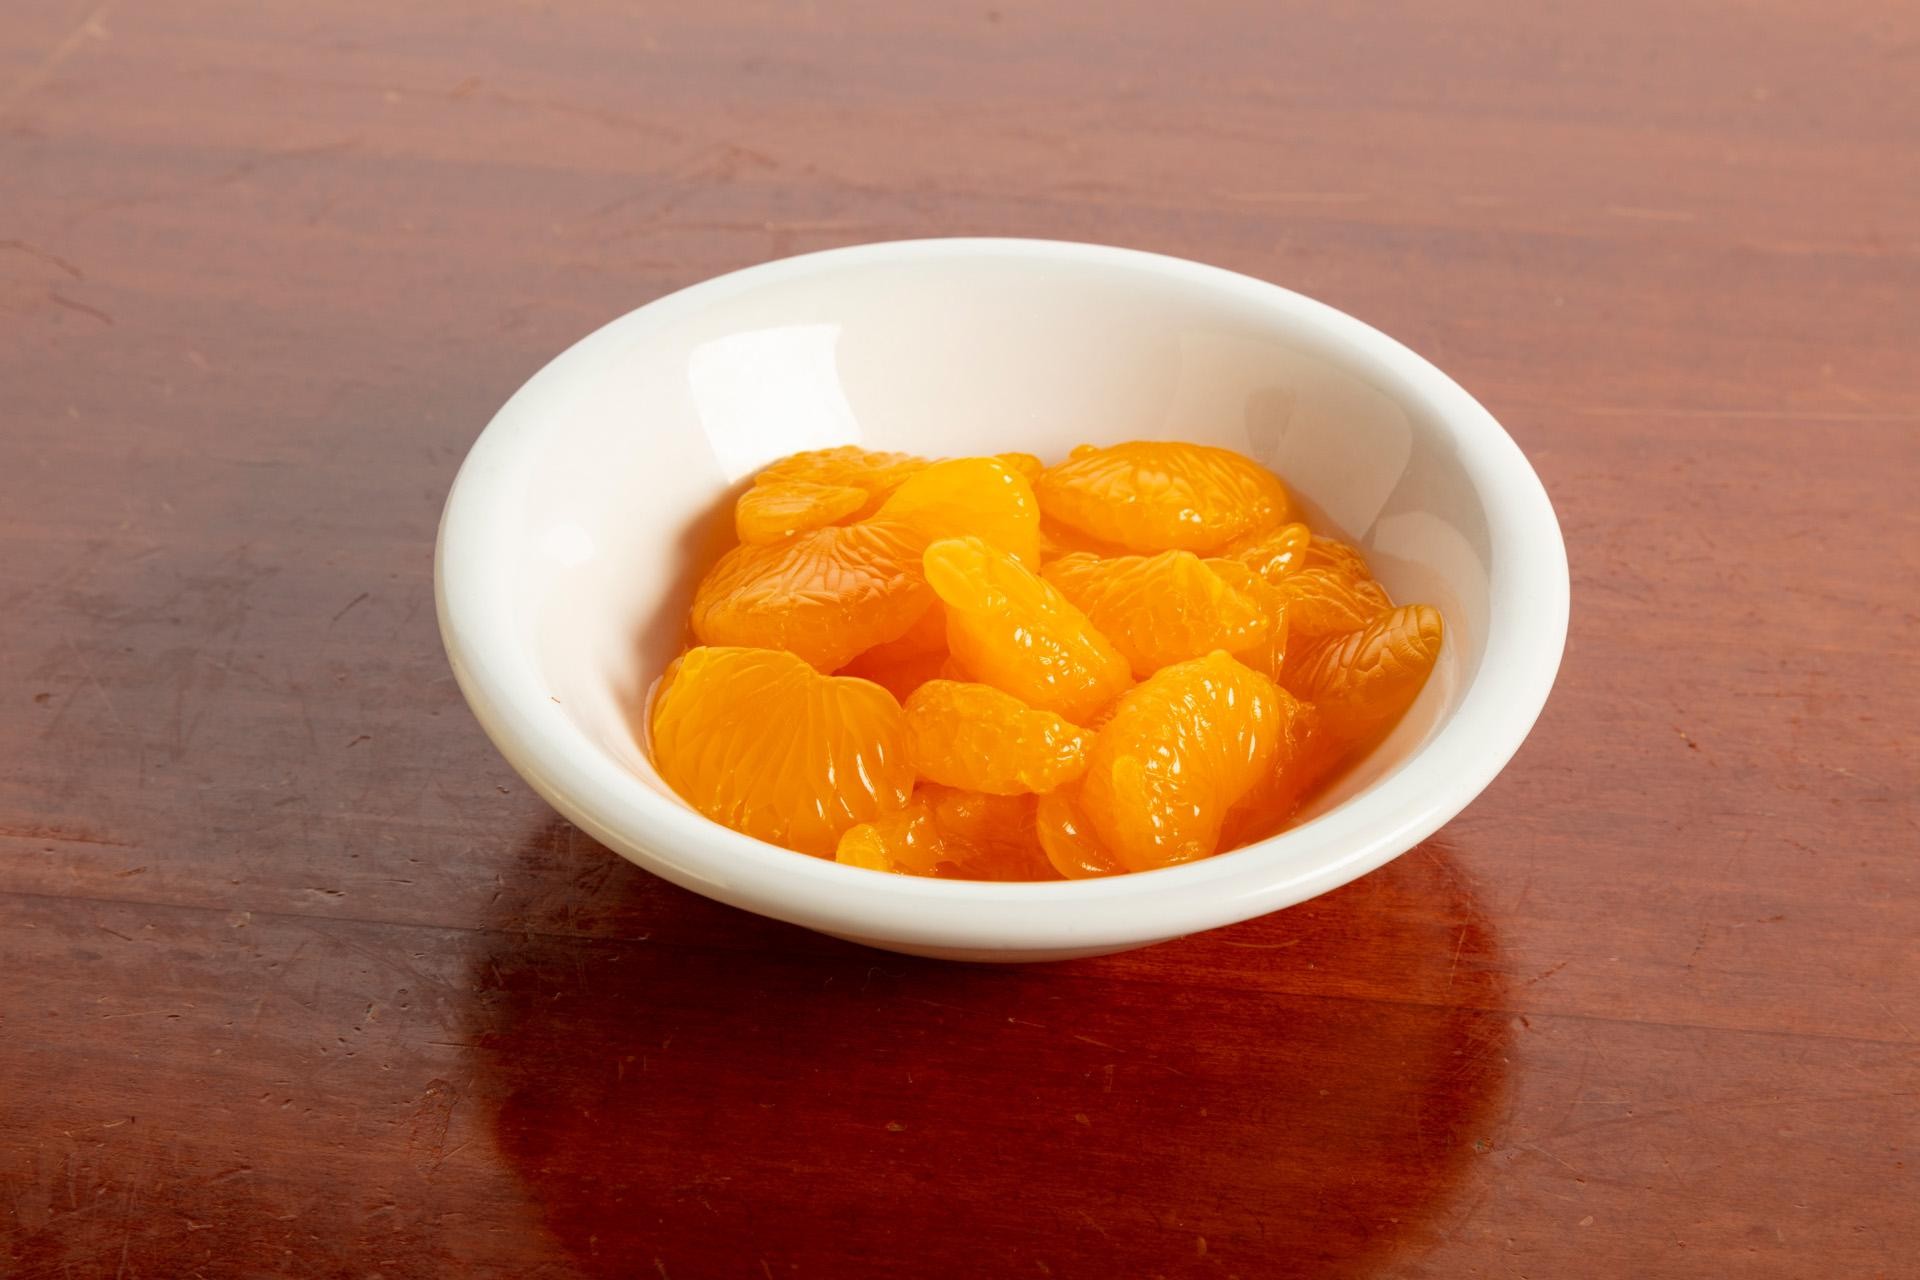 Mandarin Oranges